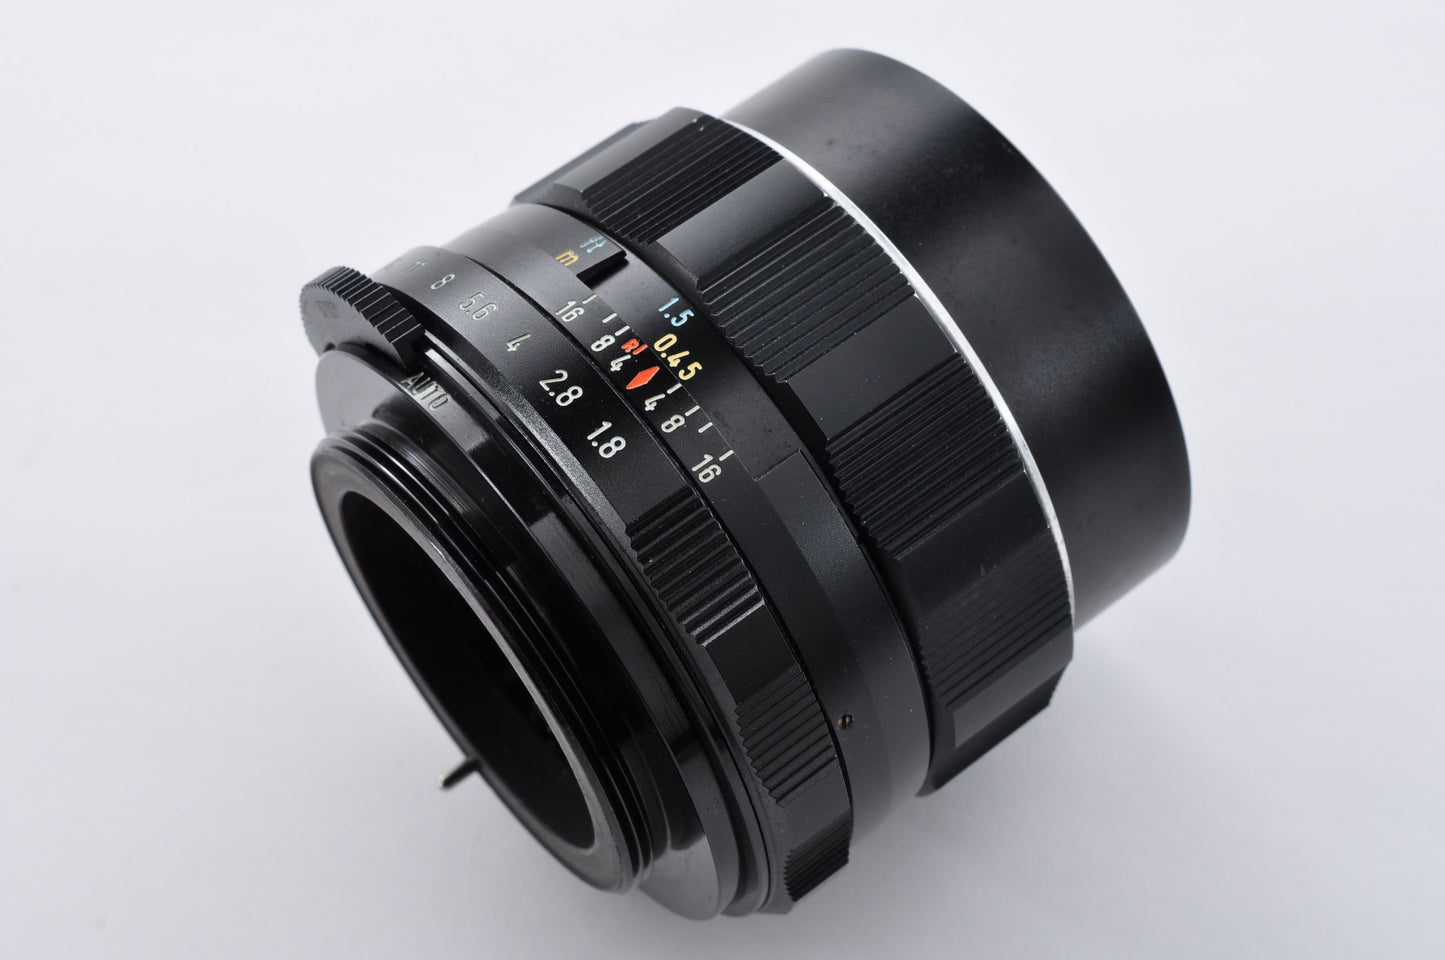 Pentax SL Black 35mm SLR Film Camera Super Takumar 55mm f1.8 From Japan #3065463